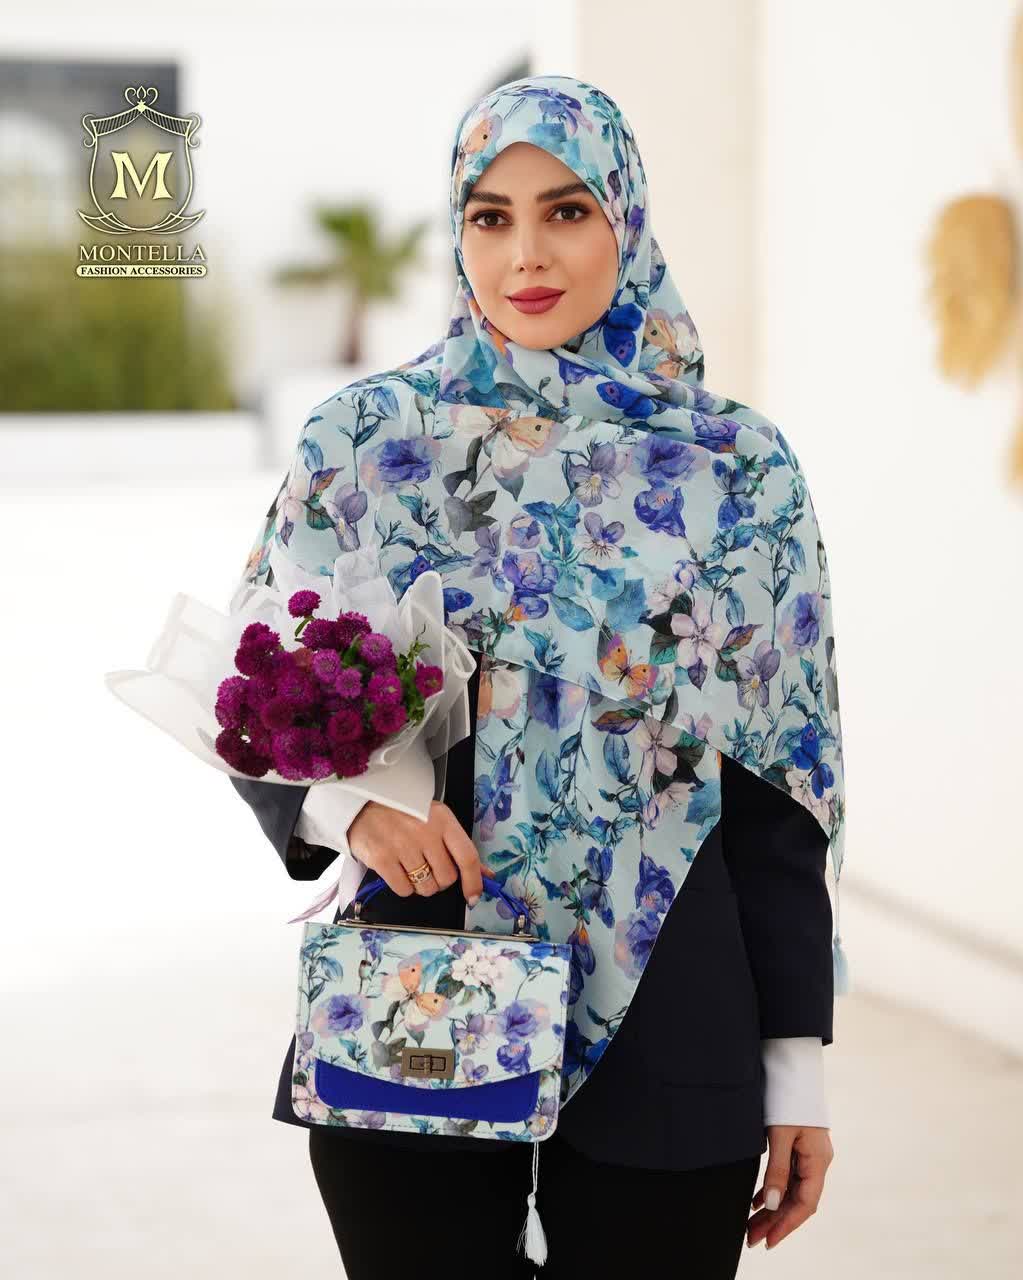 ست کیف و روسری زنانه طرح گل سیمارو برند مونتلا رنگ آبی با کیف دسته چرمی کیفیت عالی با ارسال رایگان کد mo507